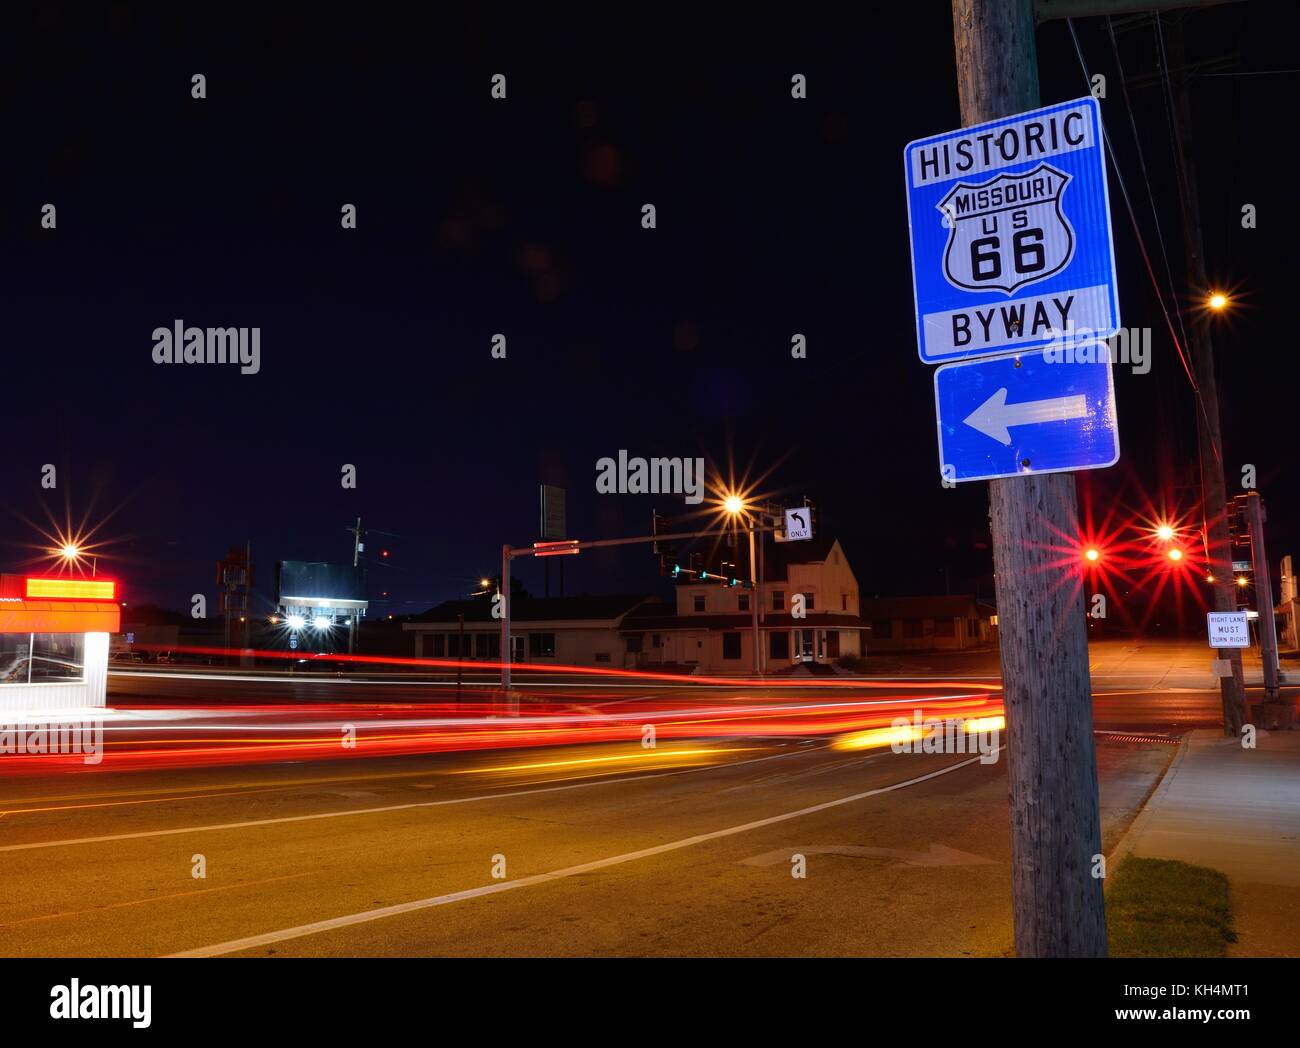 Missouri historique route 66 panneau bleu de nuit Photo Stock - Alamy